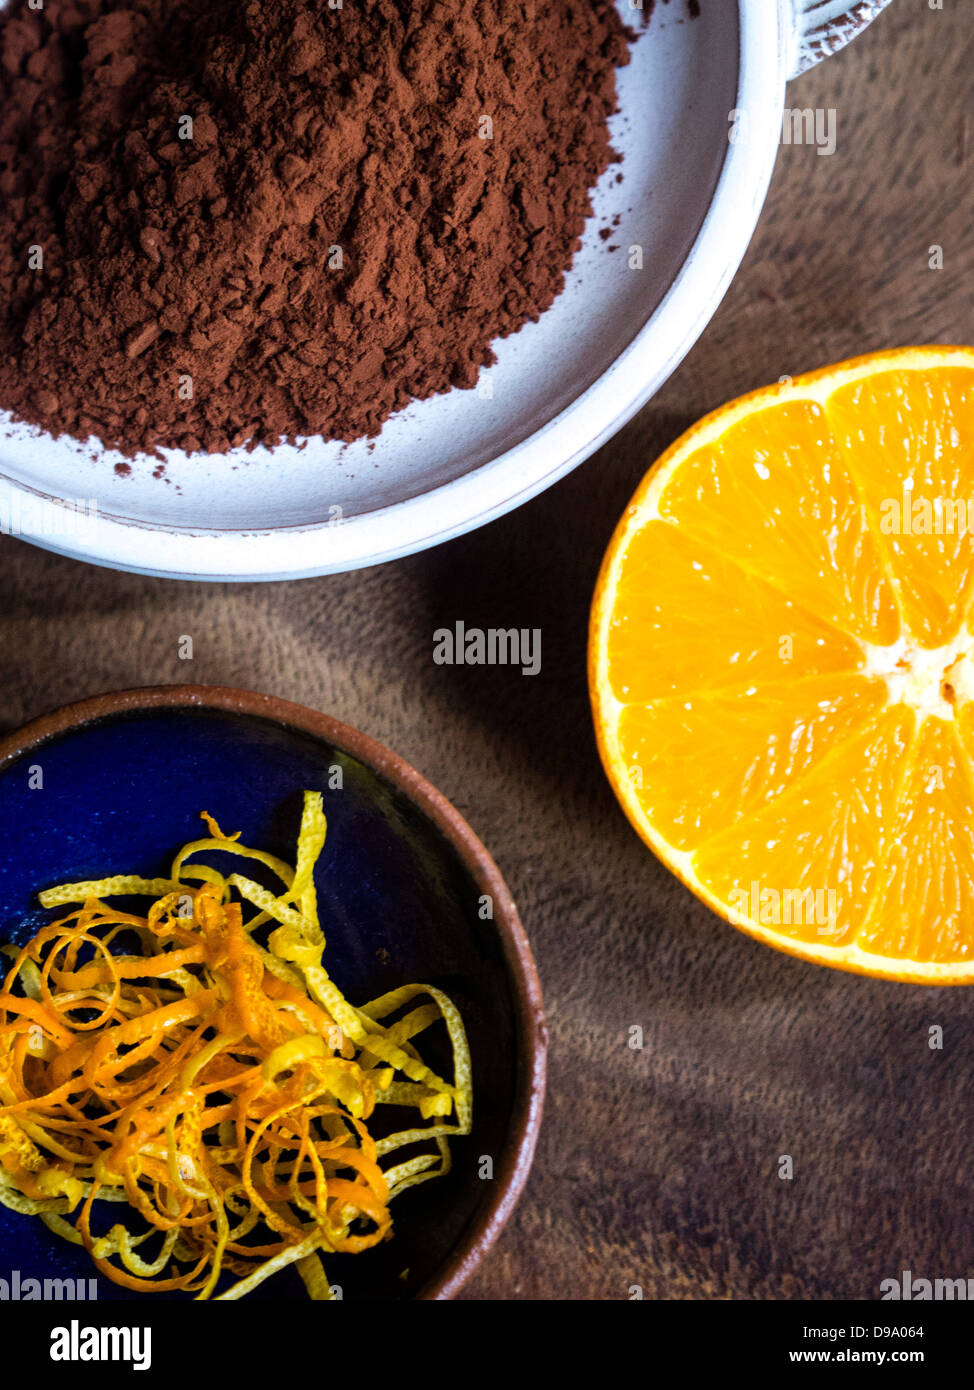 Cacao in polvere, limone e la scorza di arancia strisce, e una mezza arancia che mostra una deliziosa combinazione di sapori Foto Stock